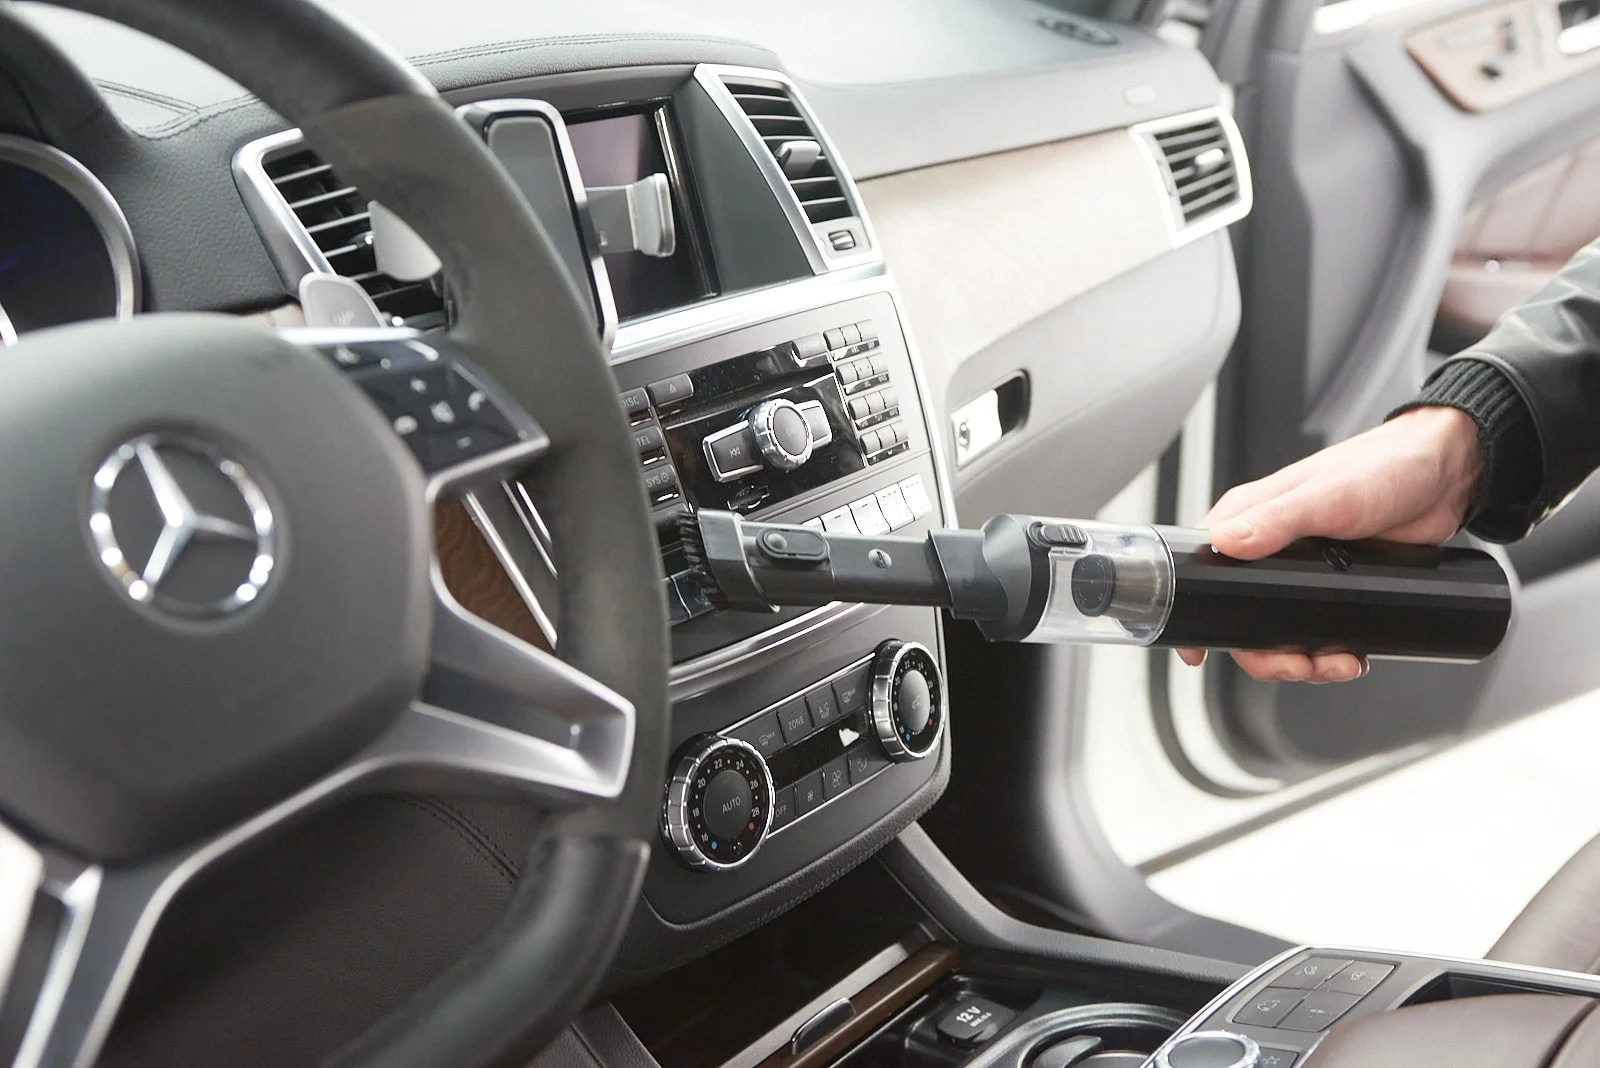 wireless handheld car vacuum cleaner for Honda HR-V